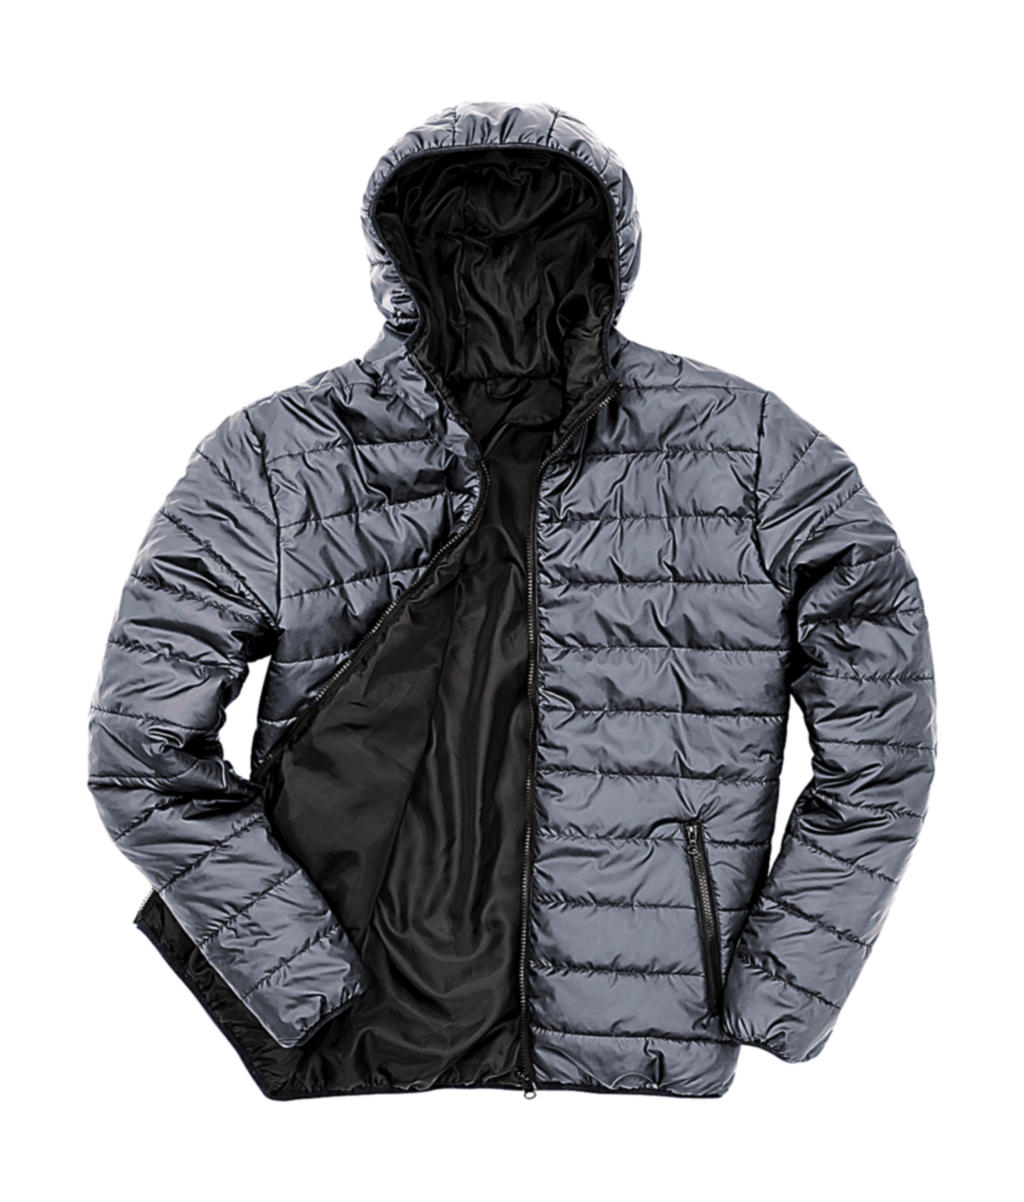 Pánská polstrovaná bunda Result s kapucí Velikost: 2XL, Barva: Frost Grey/Black